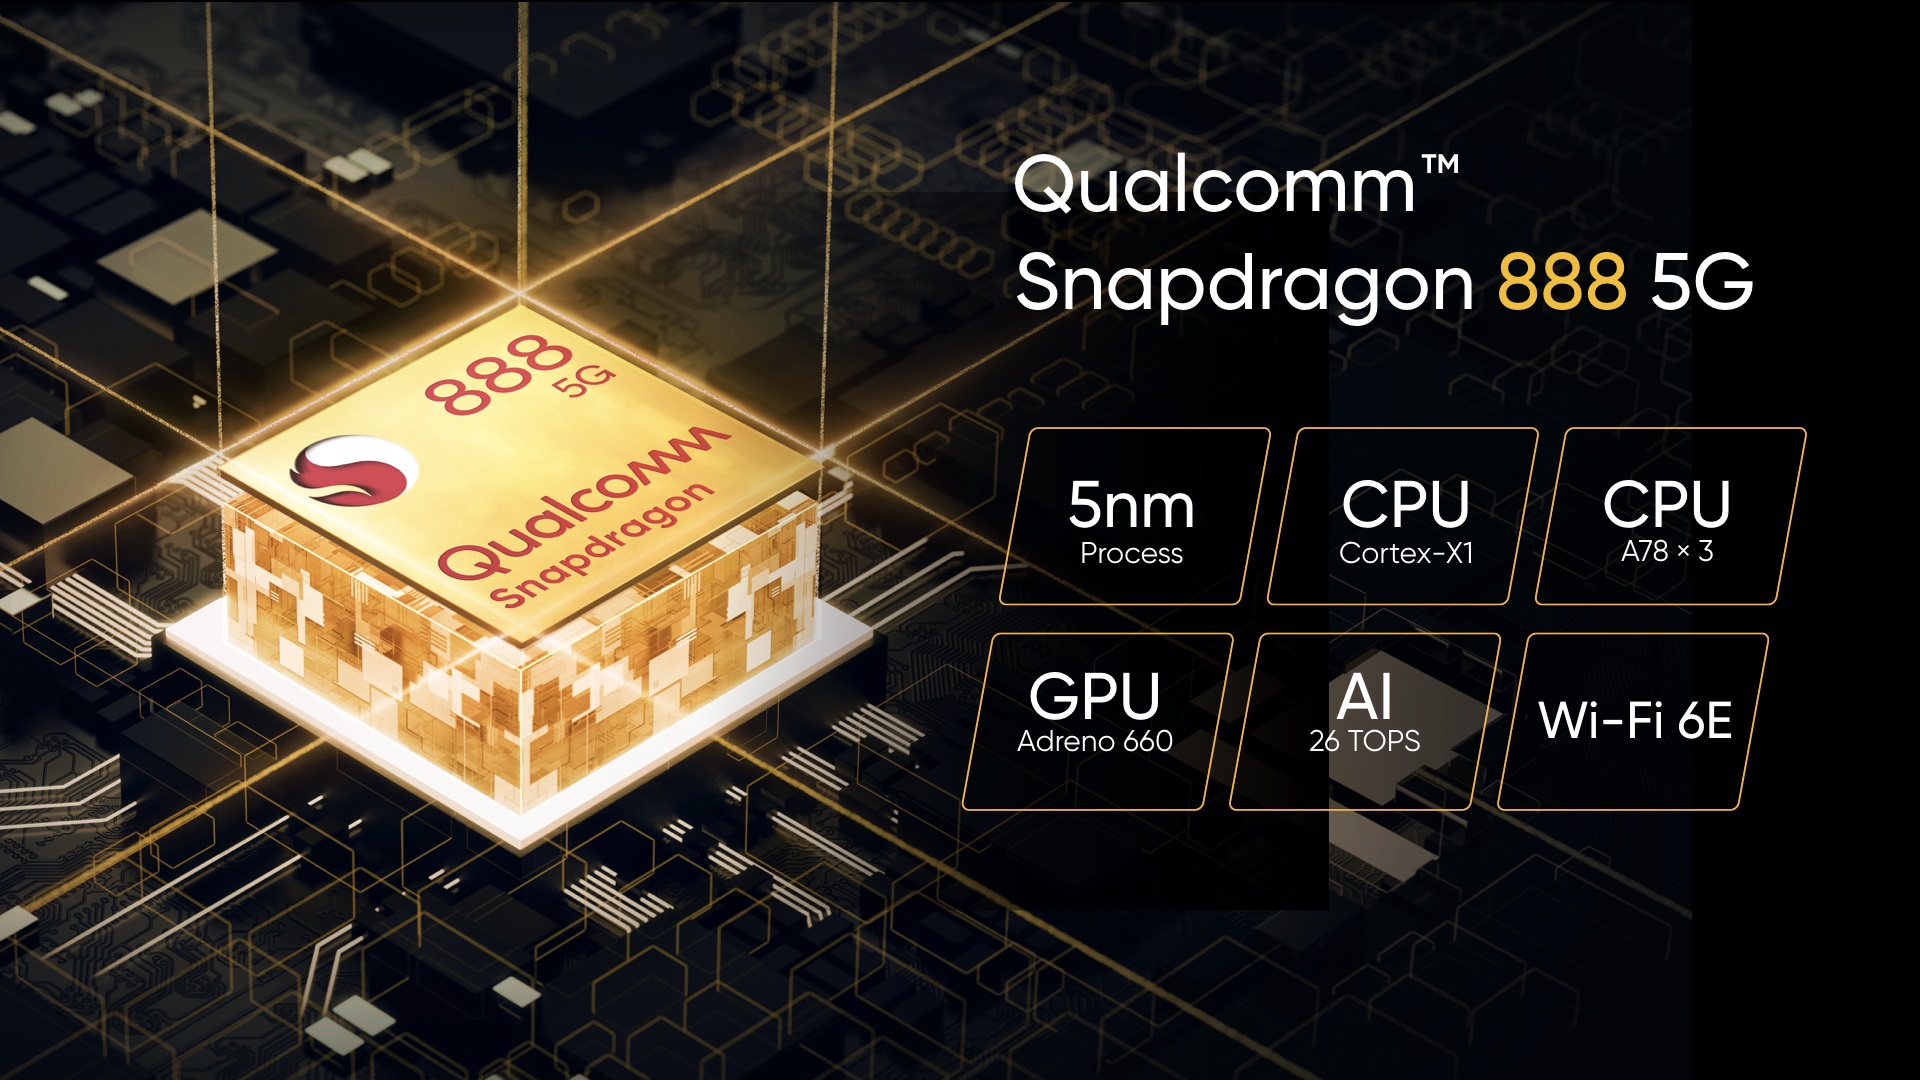 Visual Qualcomm Snapdragon 888 5G